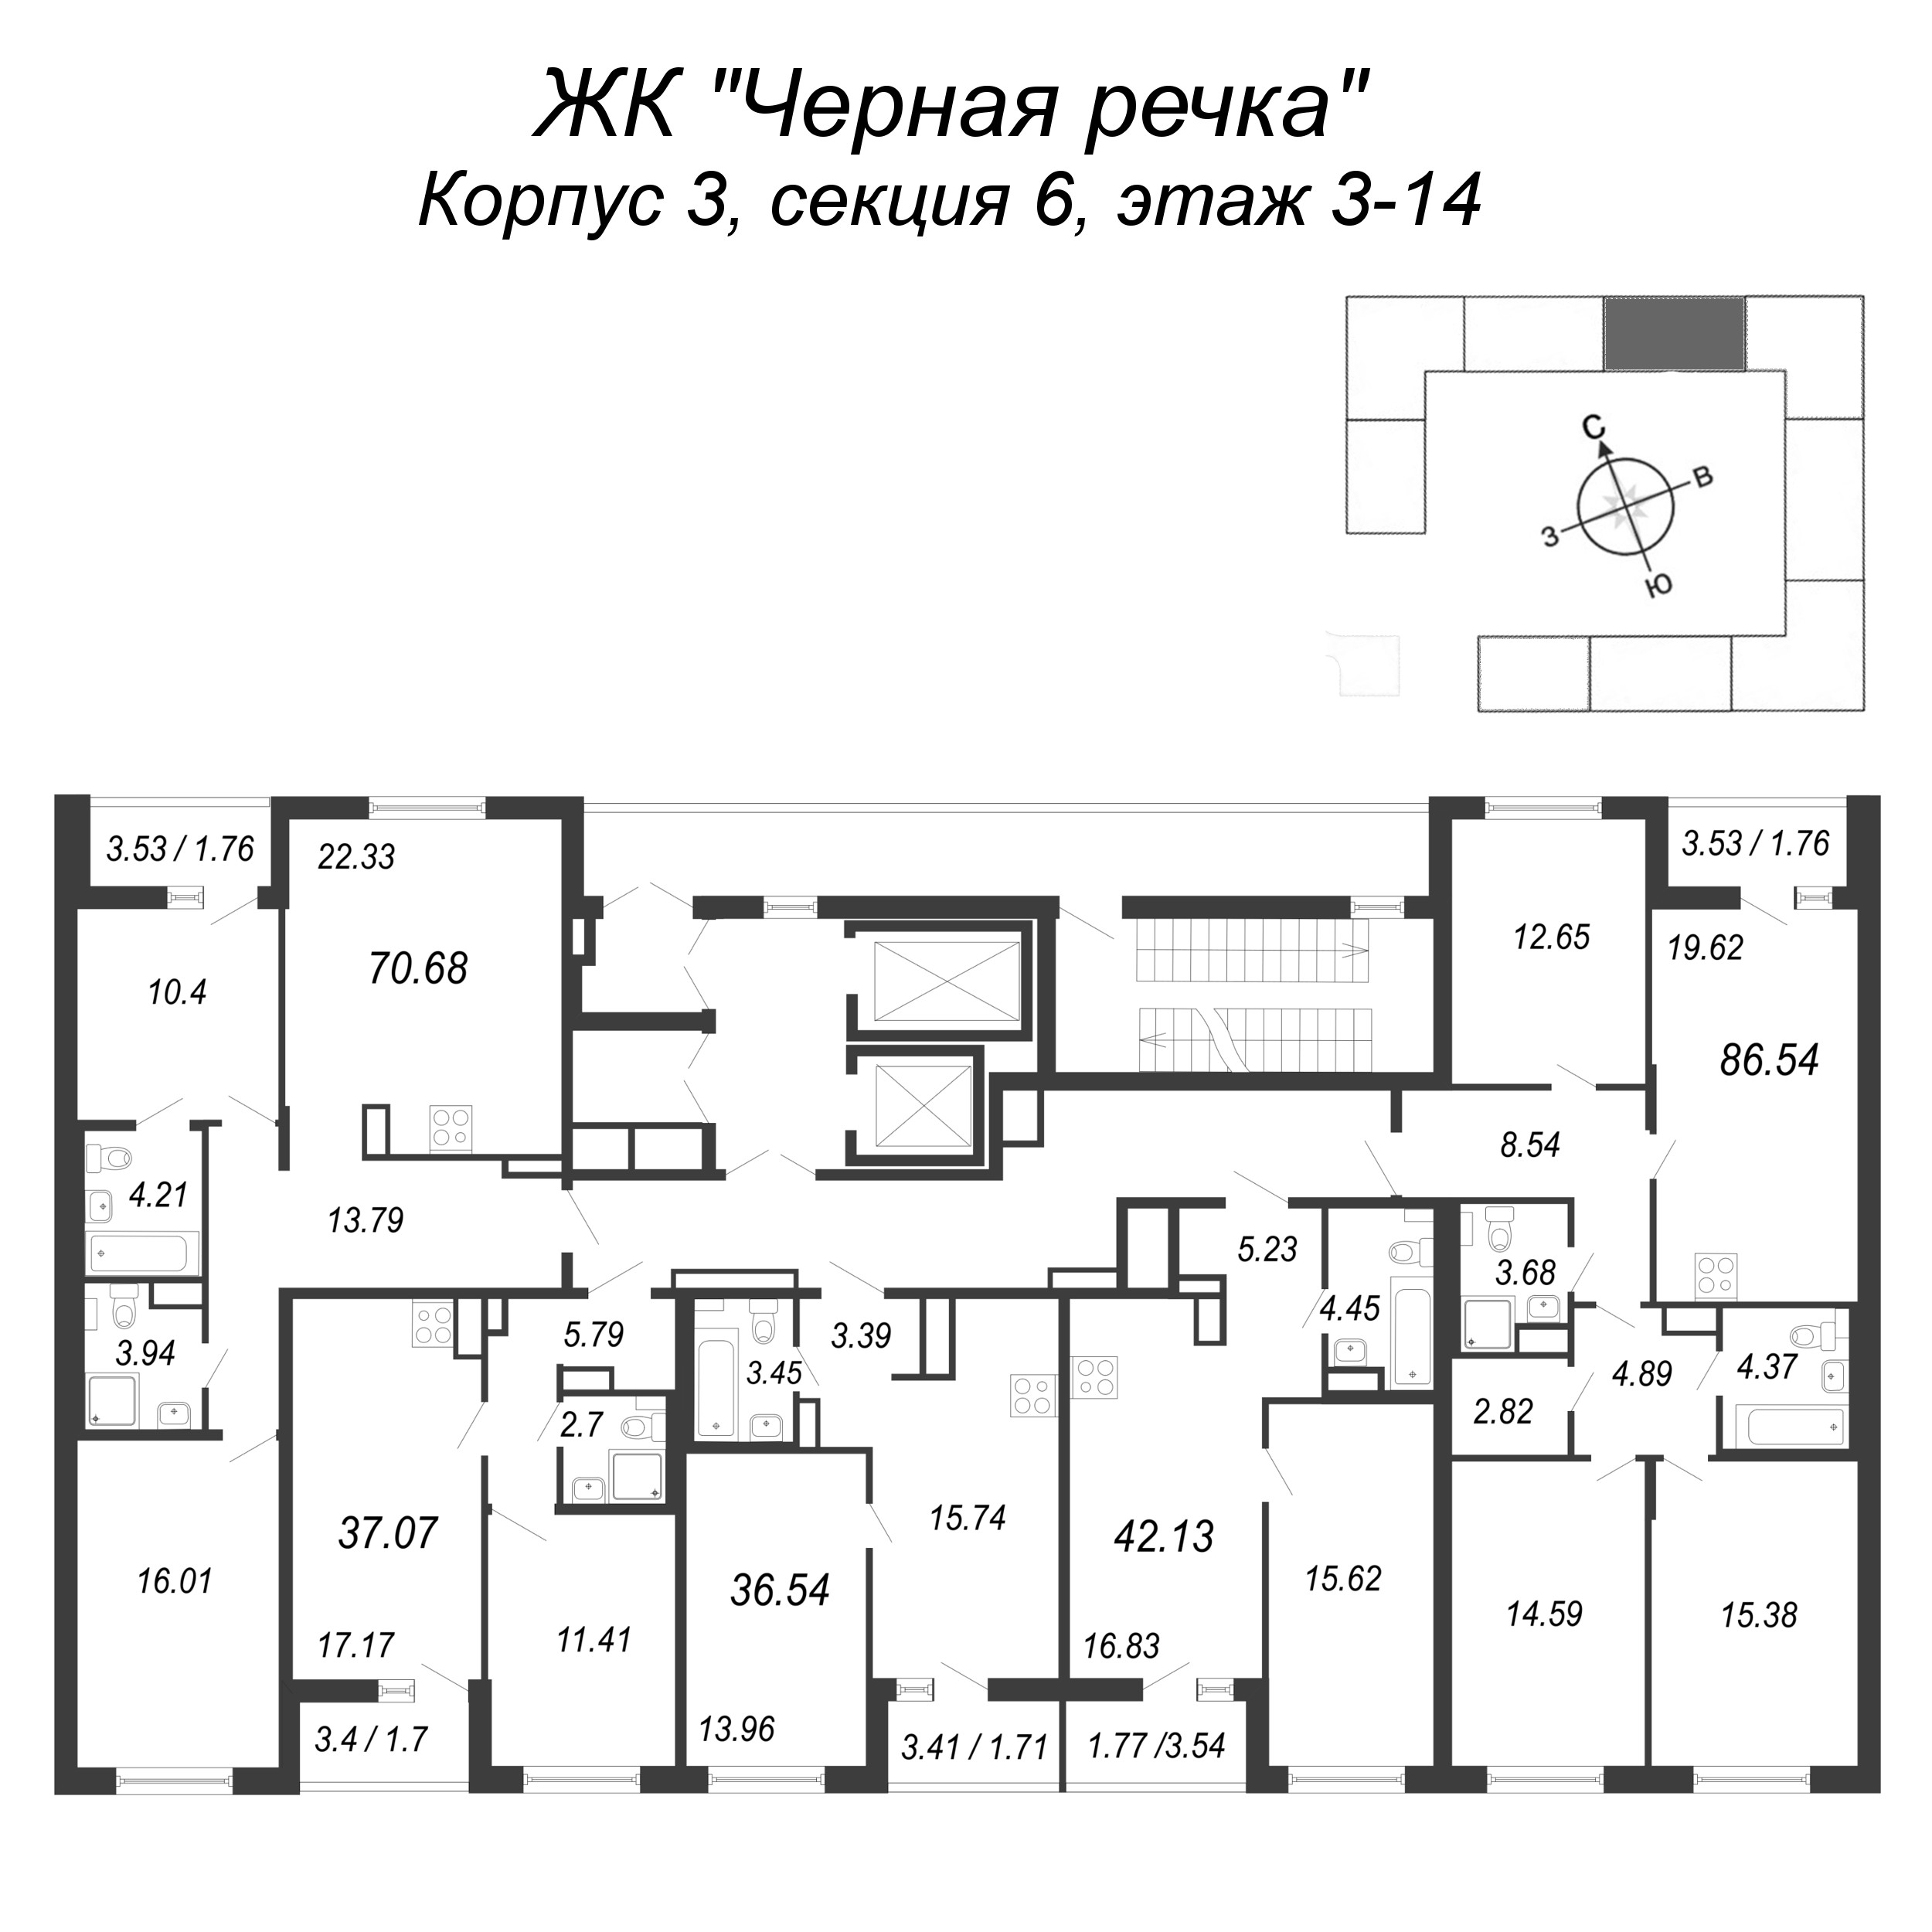 4-комнатная (Евро) квартира, 86.54 м² в ЖК "Чёрная речка" - планировка этажа